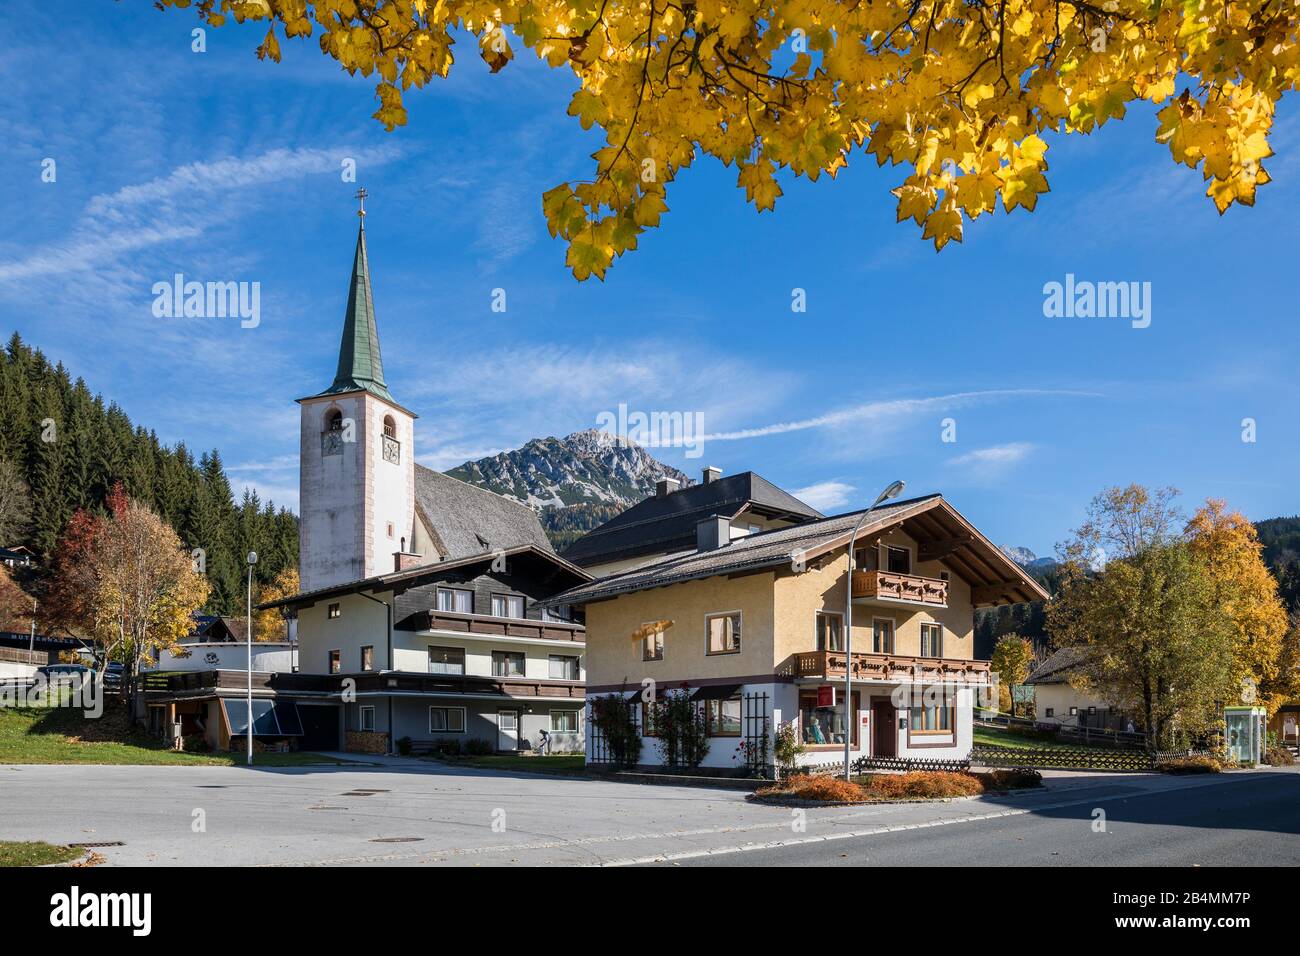 Filzmoos mit der Pfarr- und Wallfahrtskirche, Bezirk St. Johann im Pongau, Land Salzburg, Österreich, Oktober 2019 Foto Stock